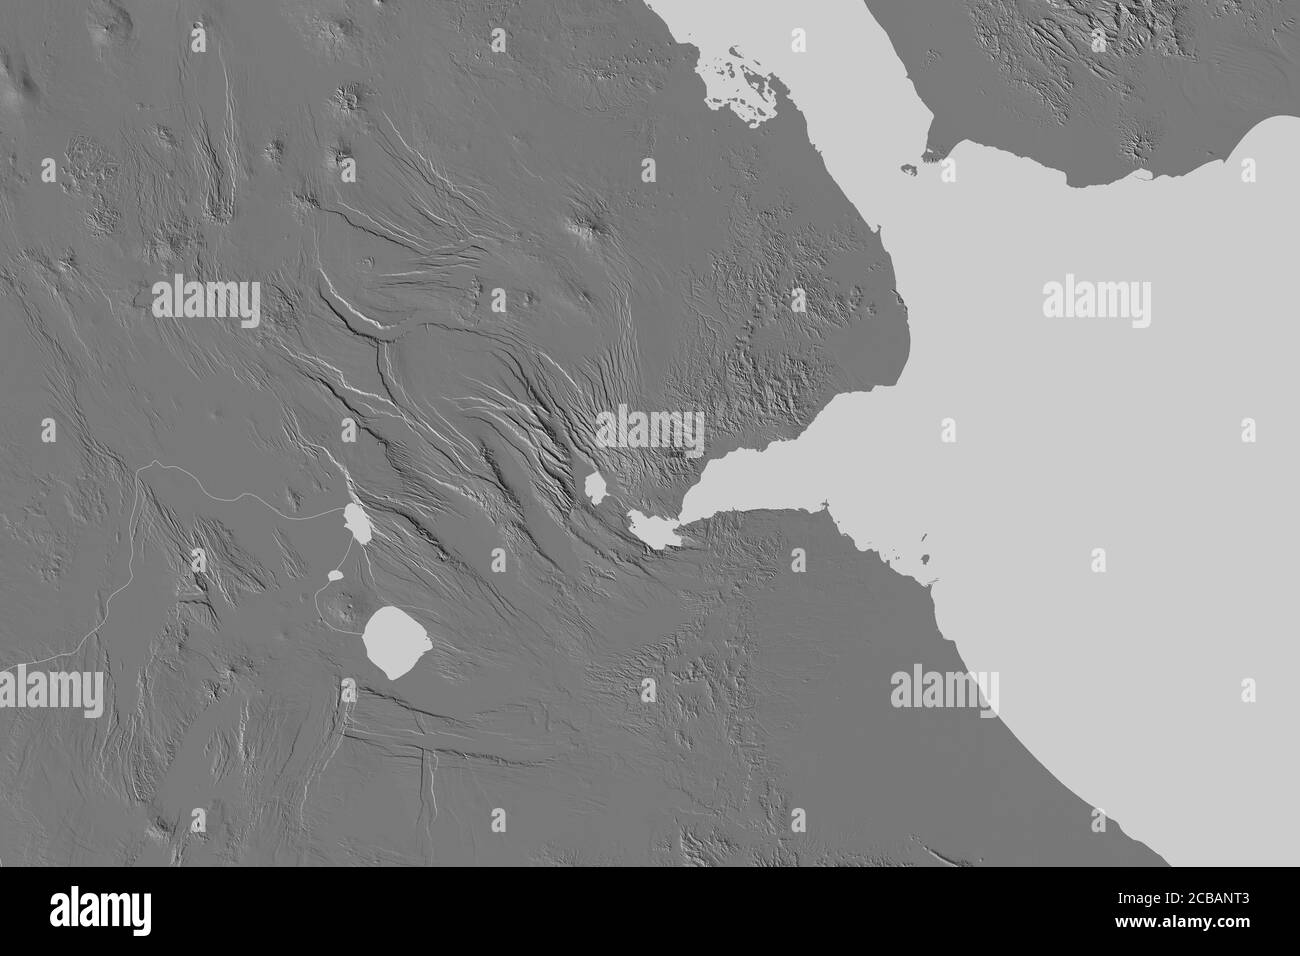 Zone étendue de Djibouti. Carte d'élévation à deux niveaux. Rendu 3D Banque D'Images